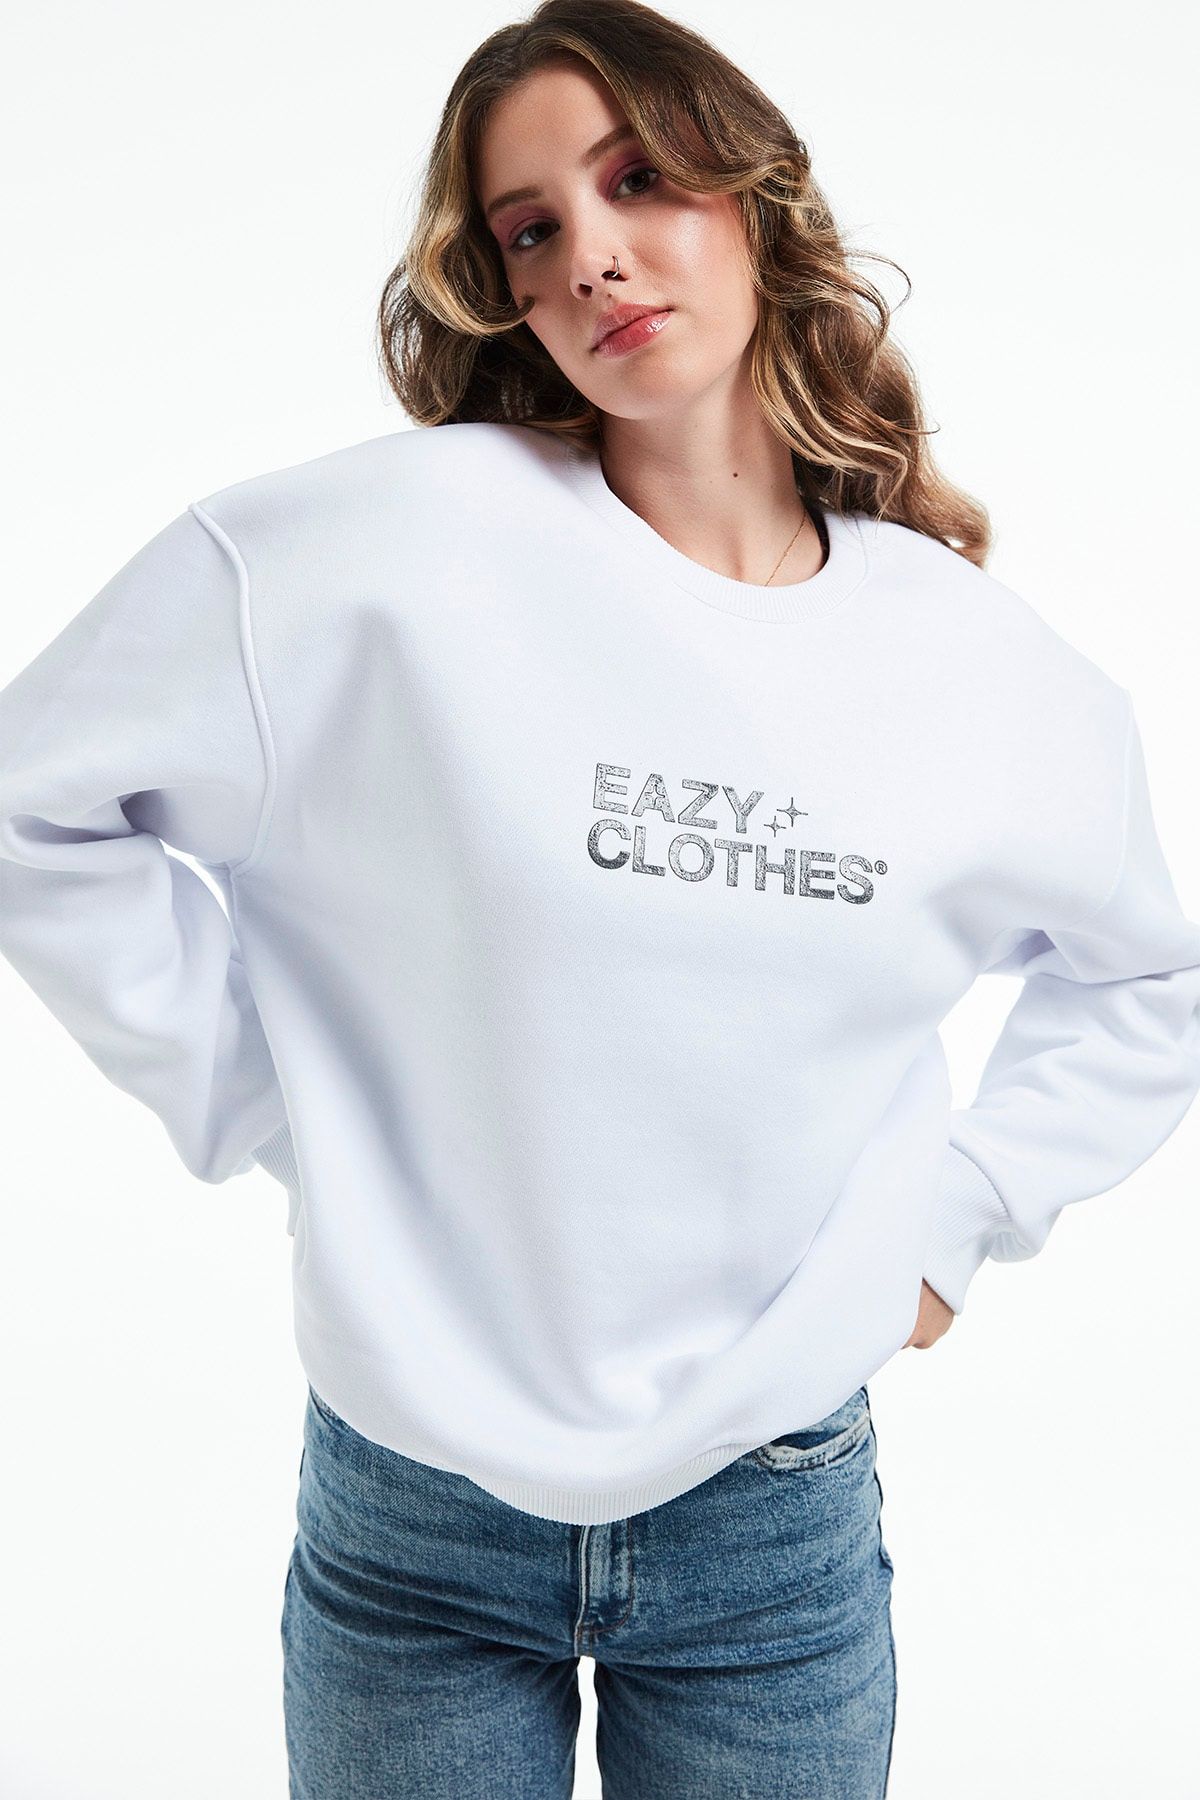 Eazy Co Eazy Clothes Oversize Unisex Beyaz Bisiklet Yaka Kalın Sweatshirt